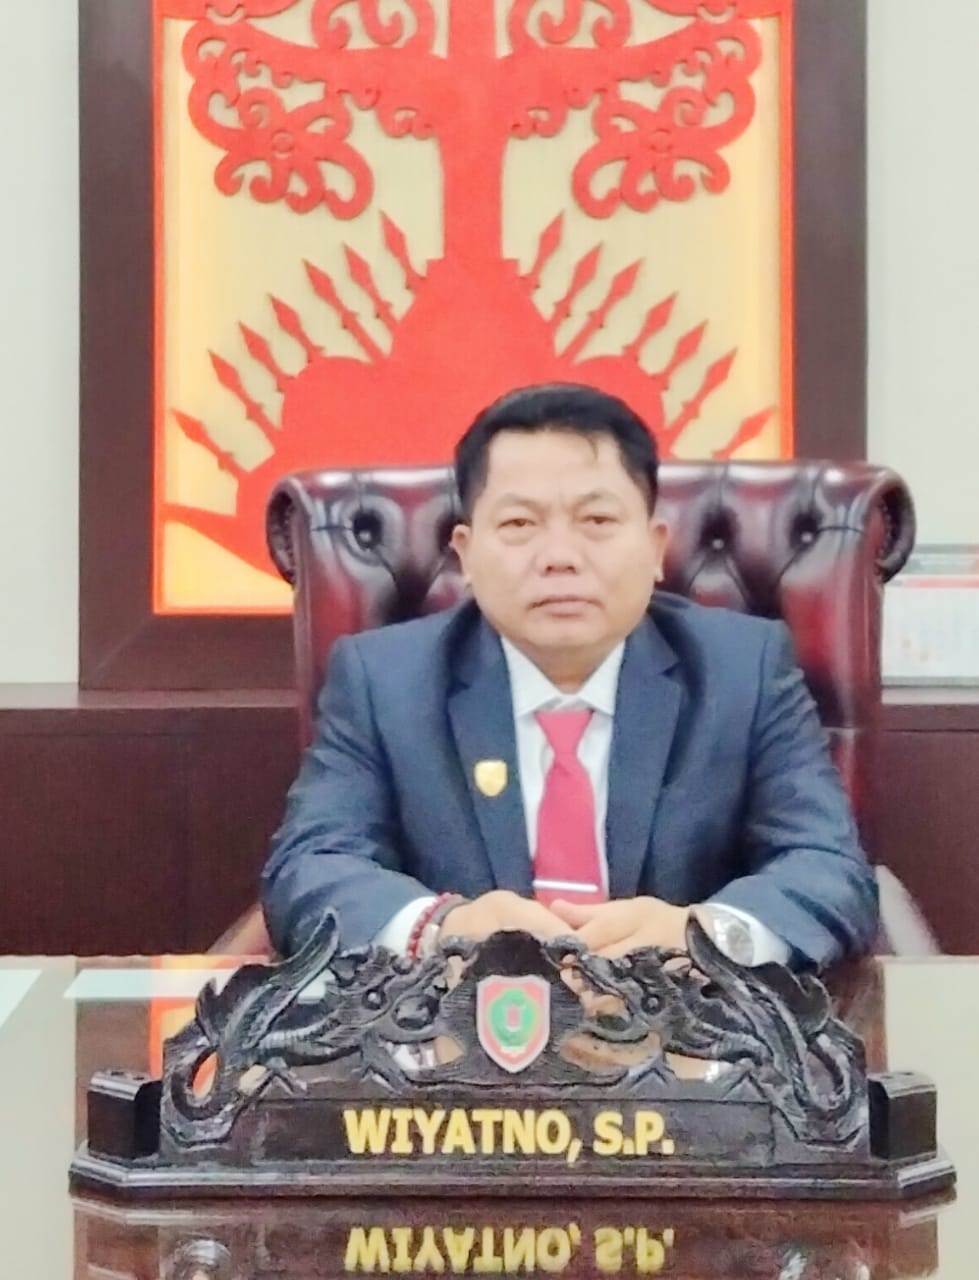 Ketua DPRD Kalteng Wiyatno SP